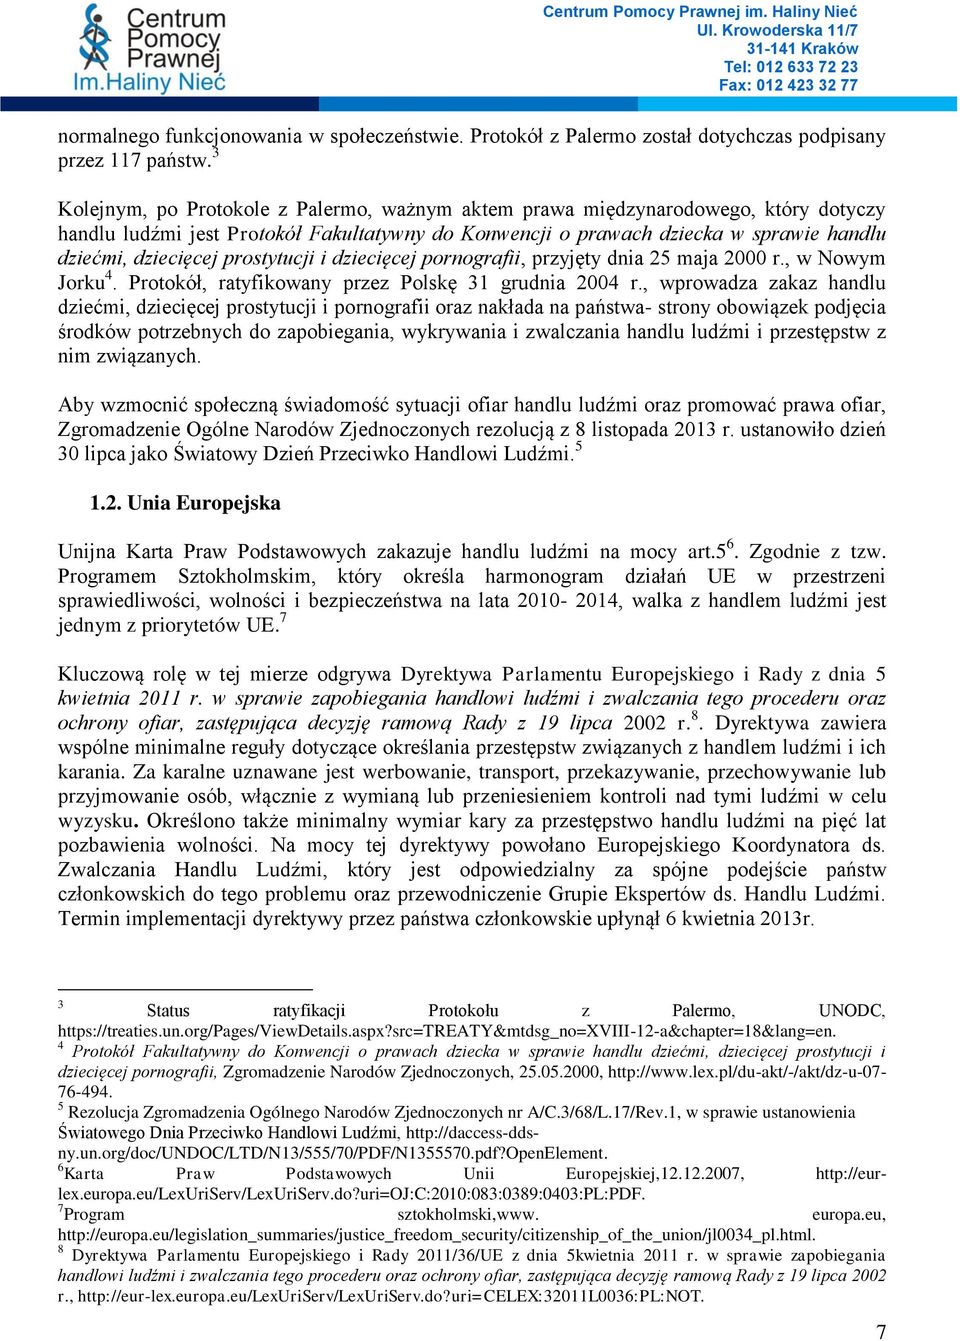 prostytucji i dziecięcej pornografii, przyjęty dnia 25 maja 2000 r., w Nowym Jorku 4. Protokół, ratyfikowany przez Polskę 31 grudnia 2004 r.